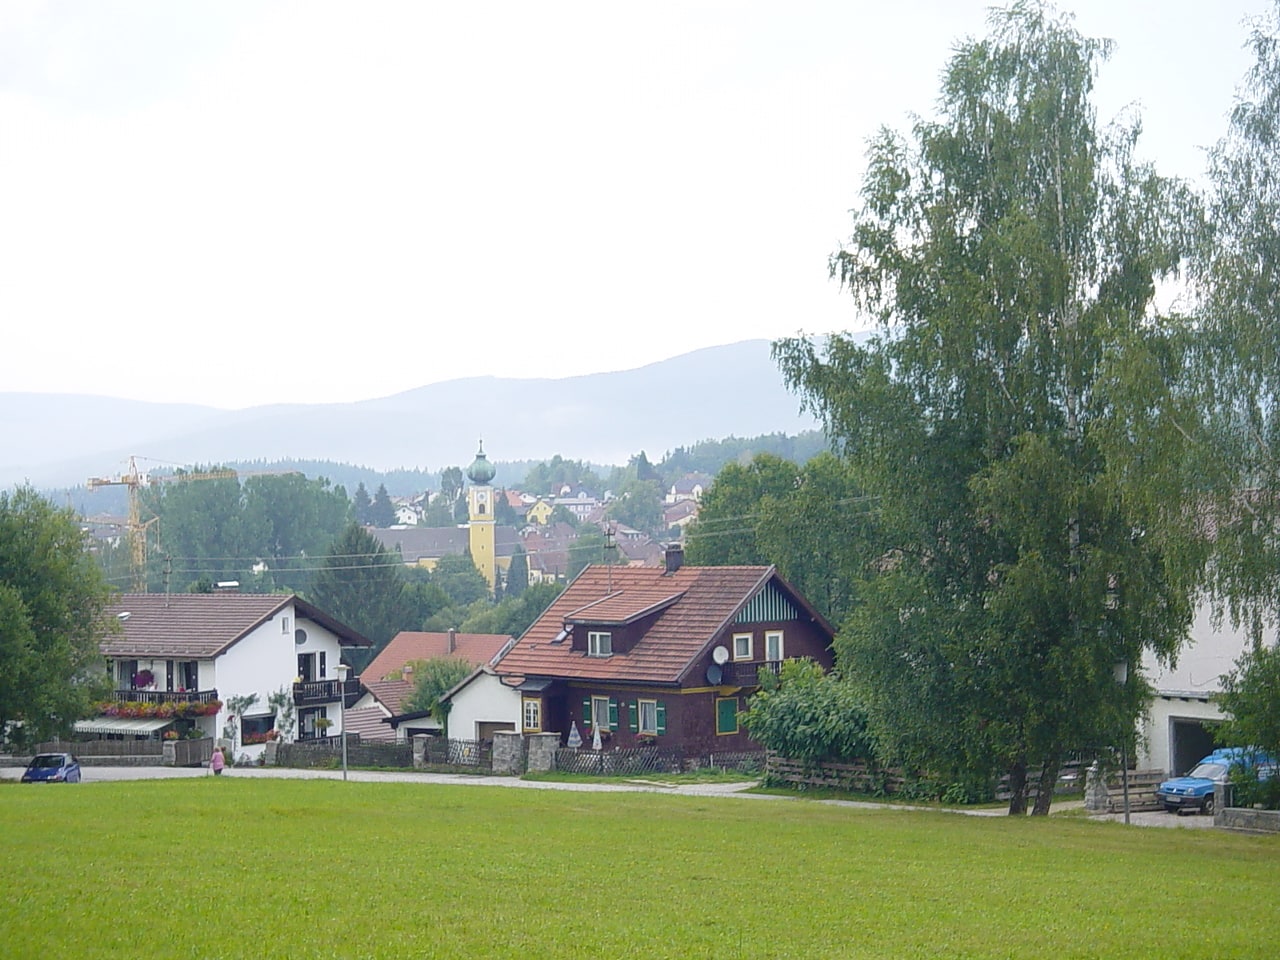 Frauenau, Germany